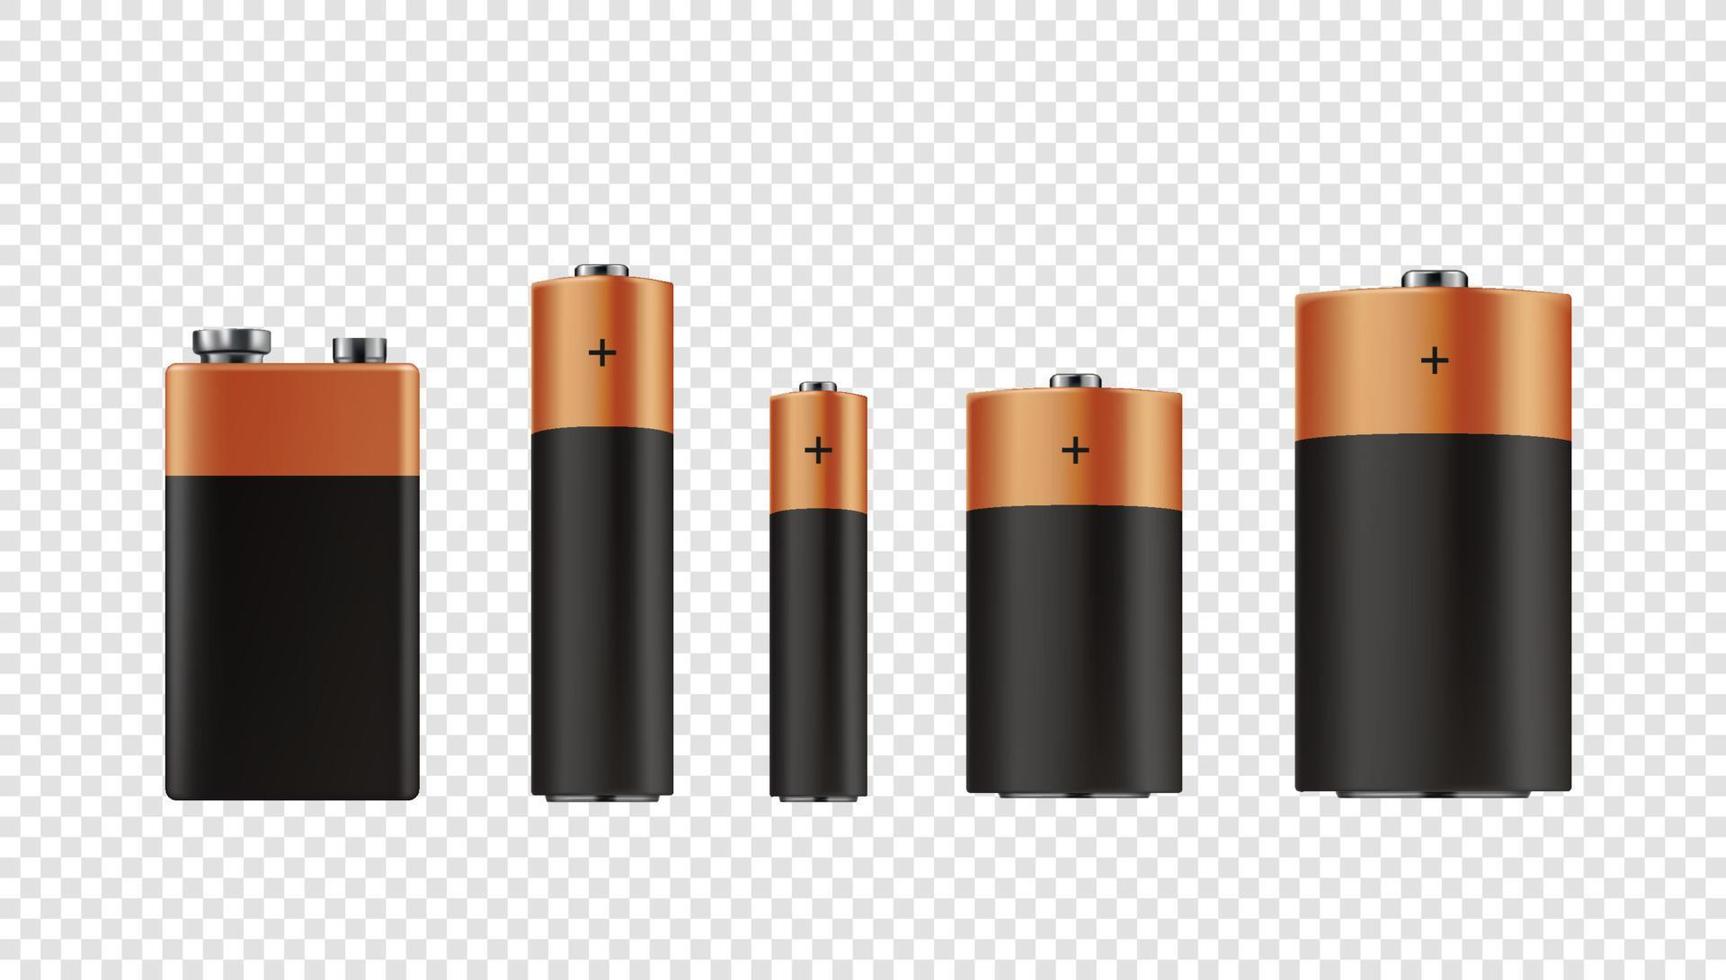 Realistischer Batteriesatz unterschiedlicher Größe. 3D-Vektor-Cliparts vektor